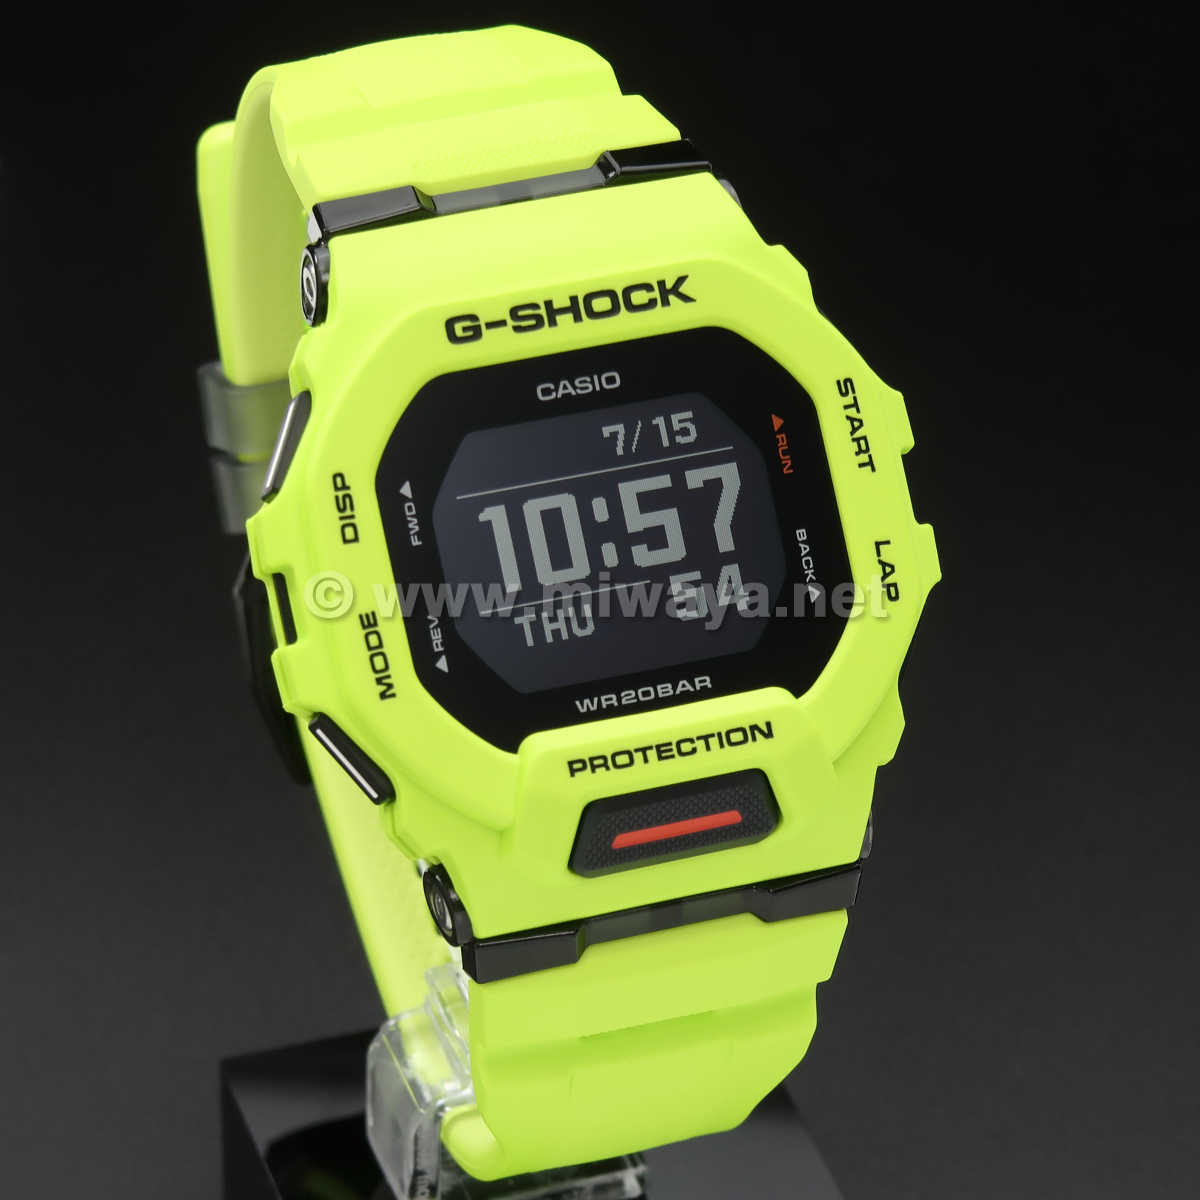 商品状態についてCASIO 腕時計 G-SHOCK GBD-200-9JF